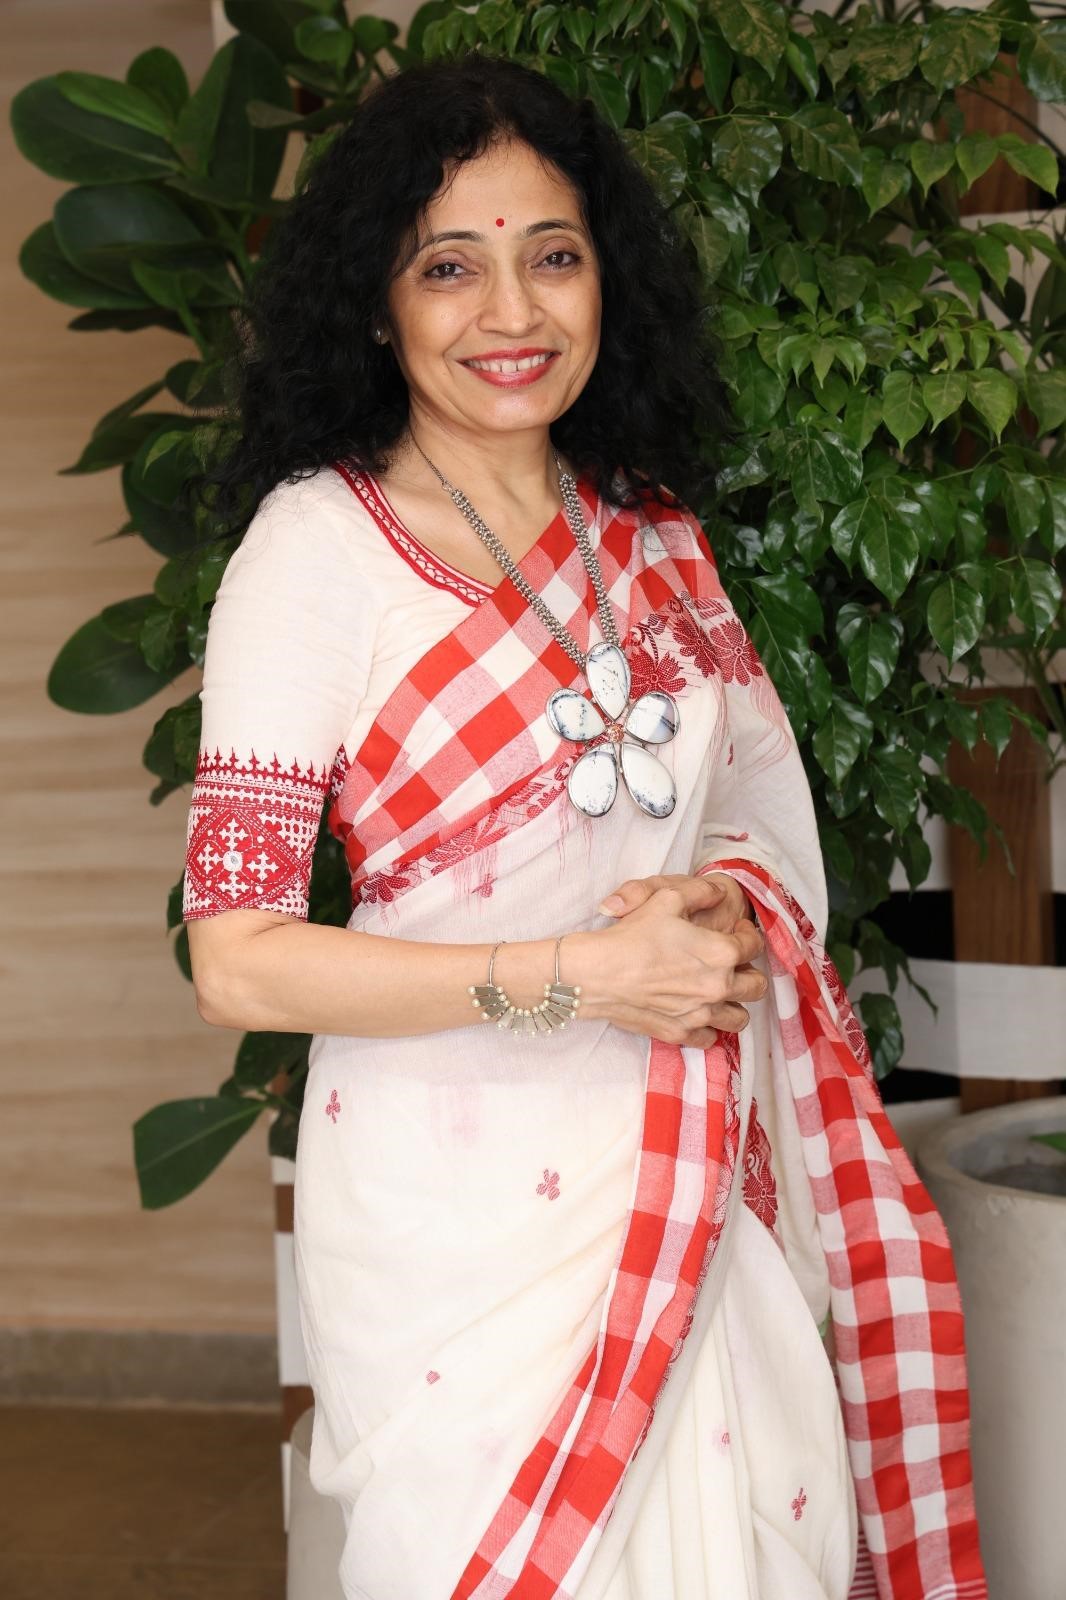 Priya Darshini Gazdar